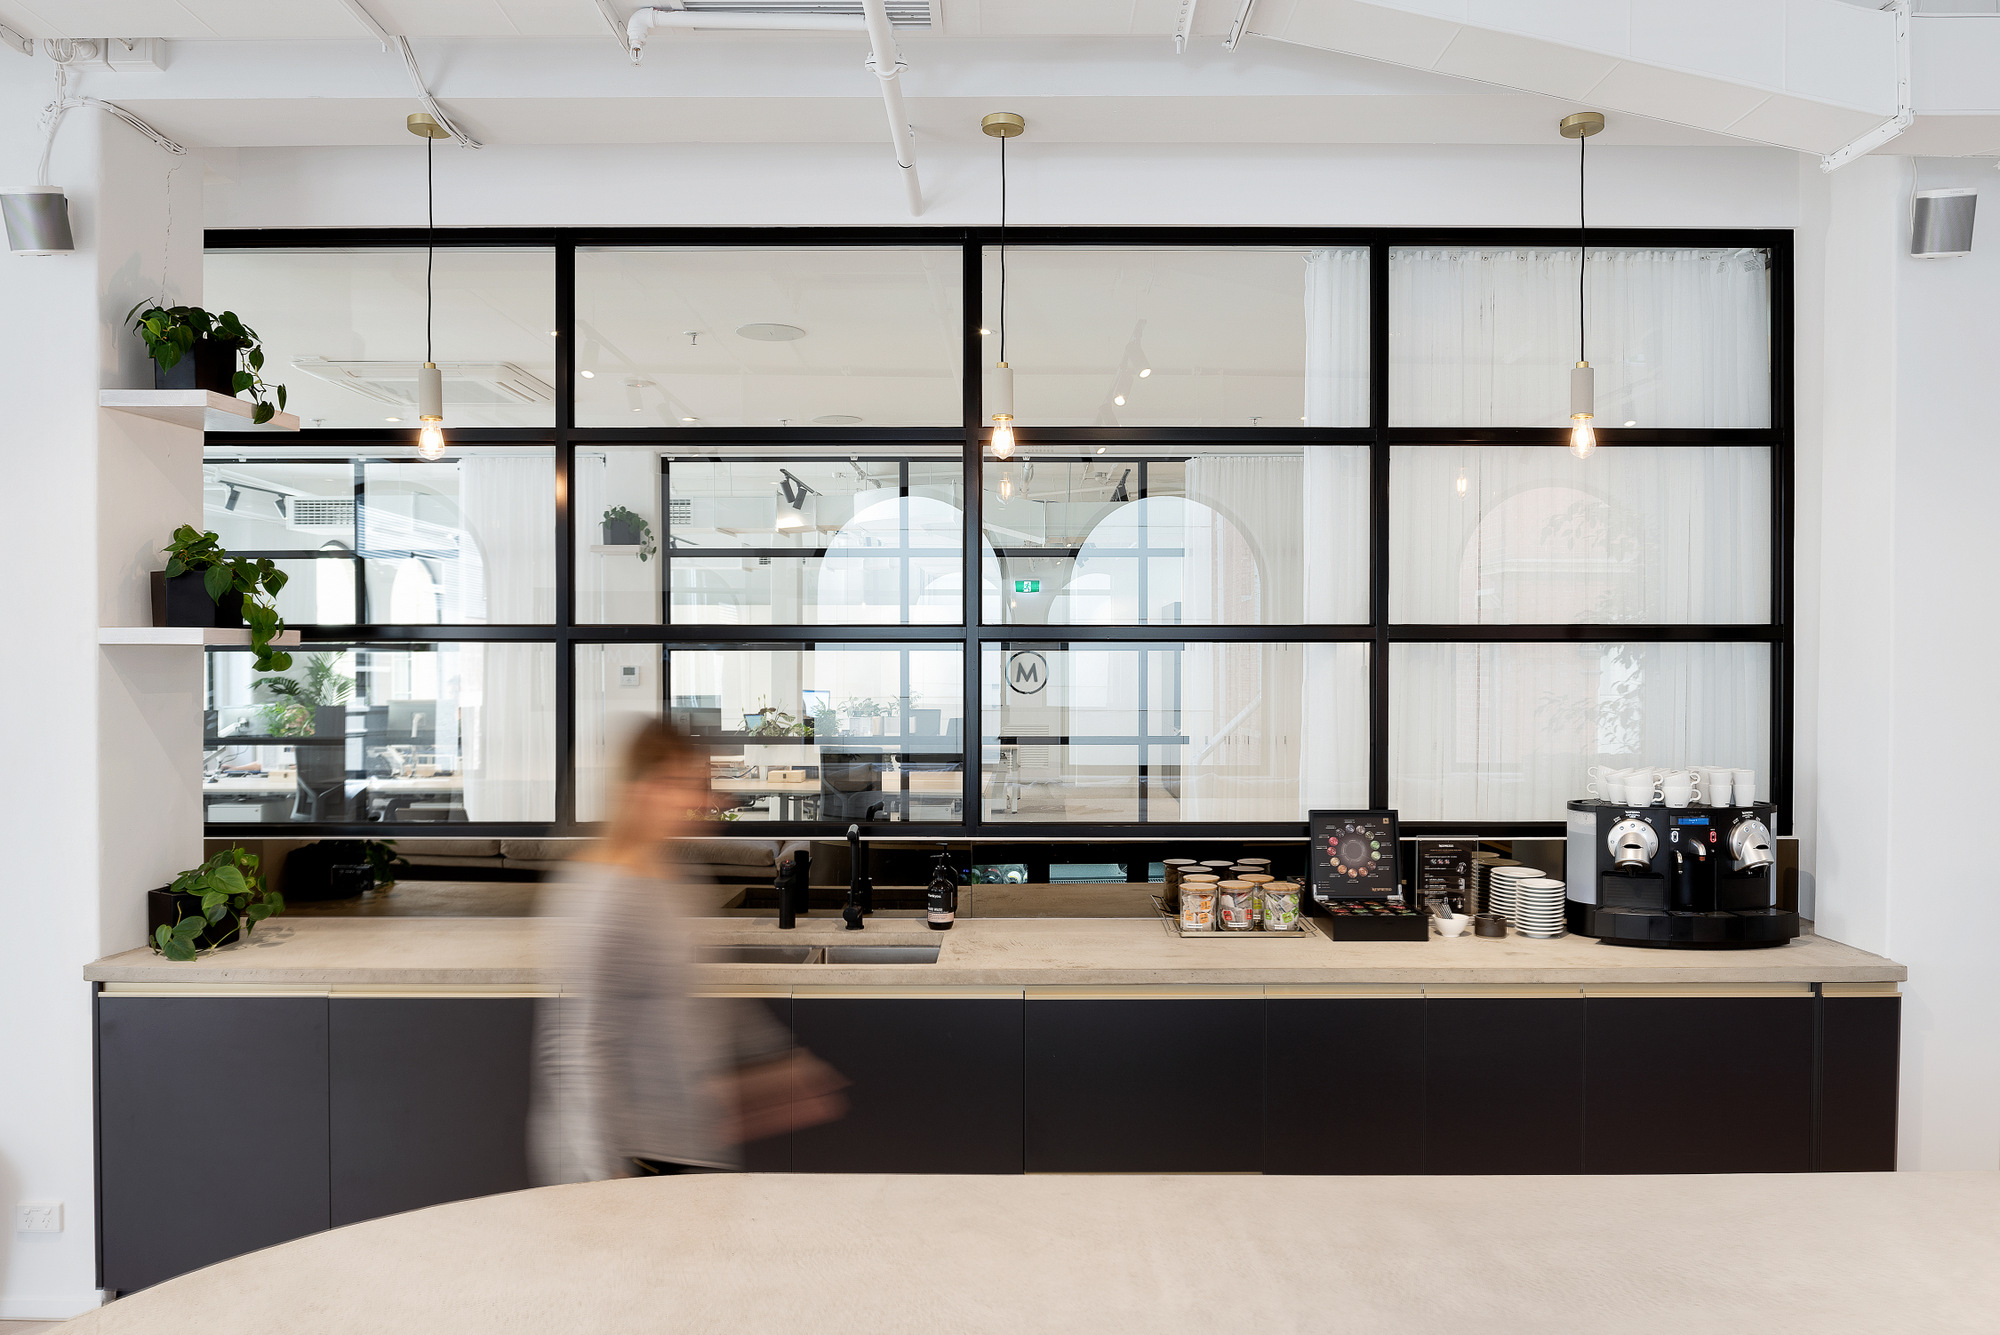 图片[8]|Maximus办公室-墨尔本|ART-Arrakis | 建筑室内设计的创新与灵感